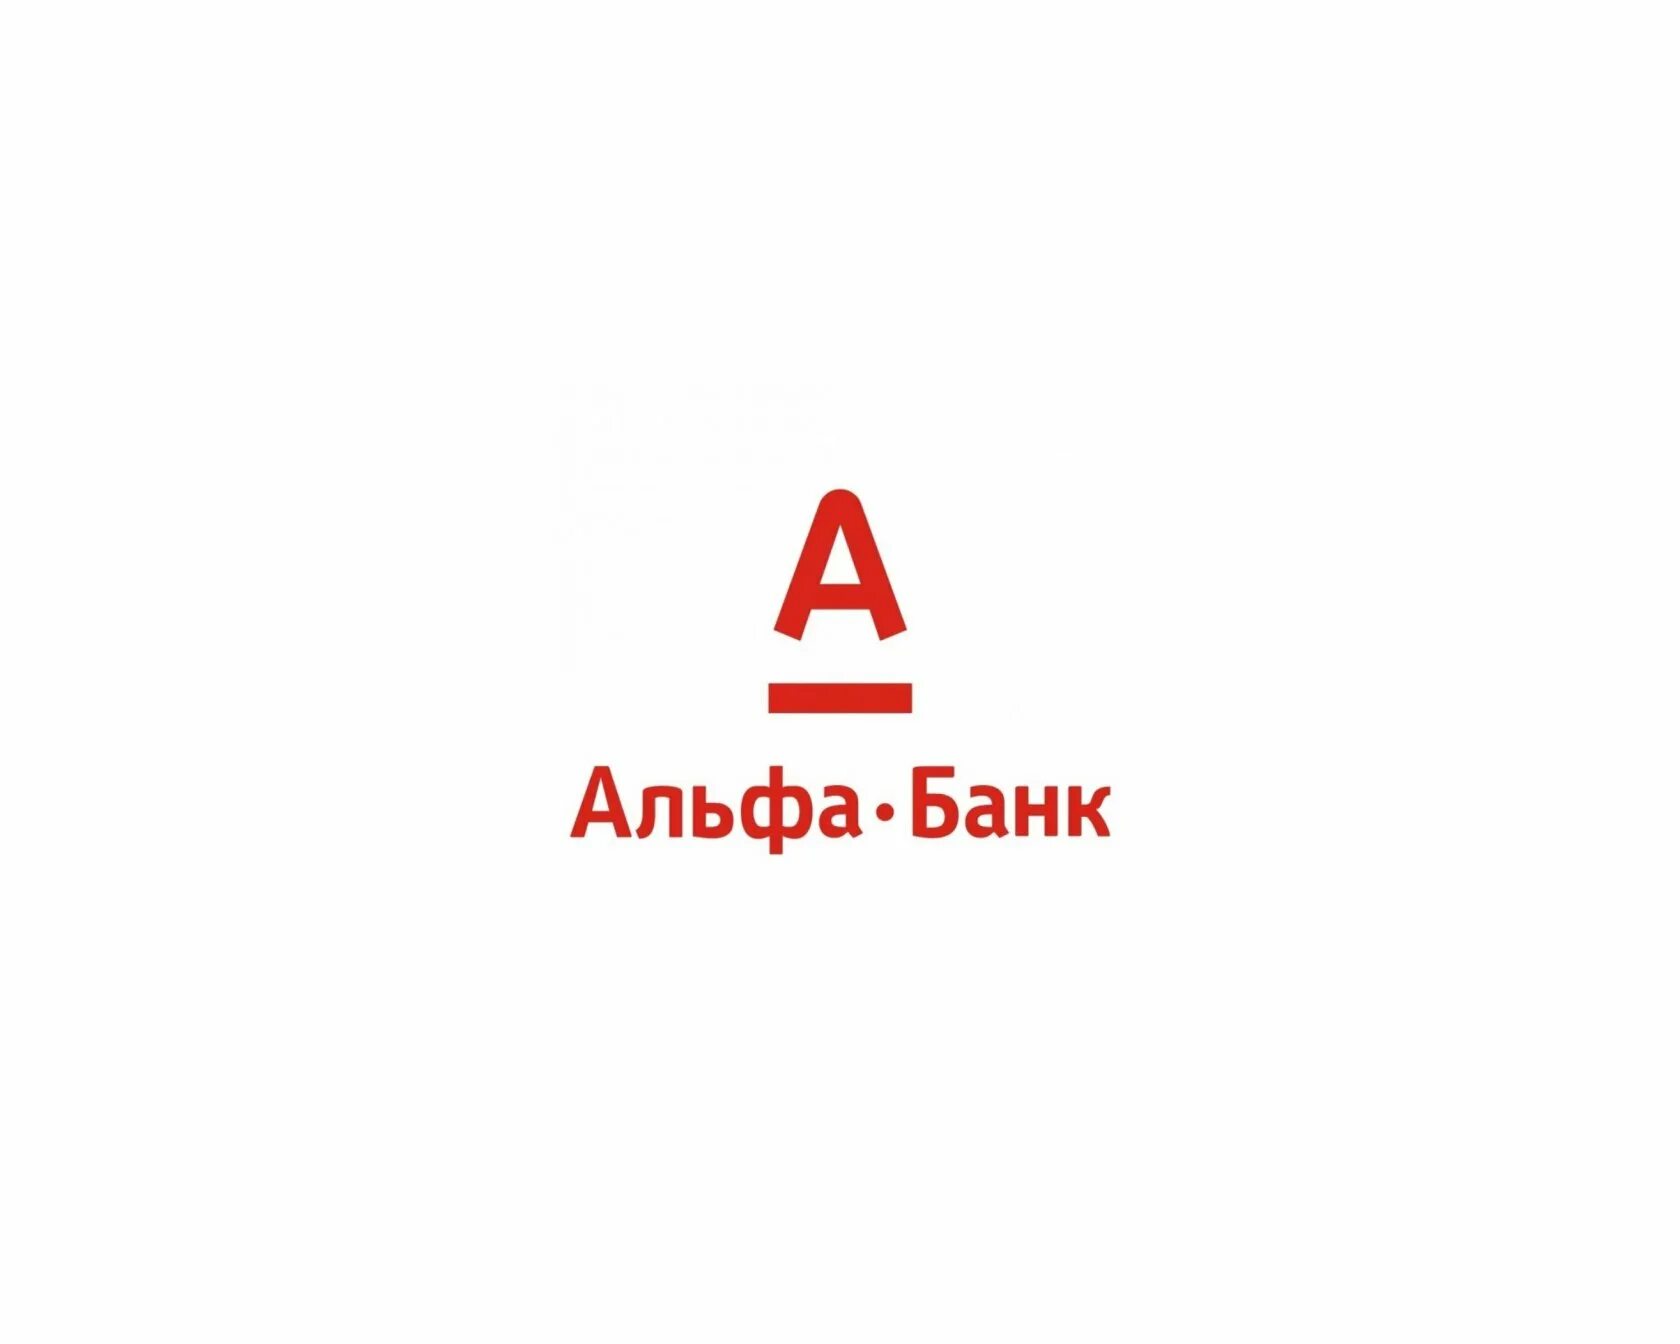 Эмблема Альфа банка. Альфа банк логотип на белом фоне. Алеф банк. Альфа банк иллюстрации.